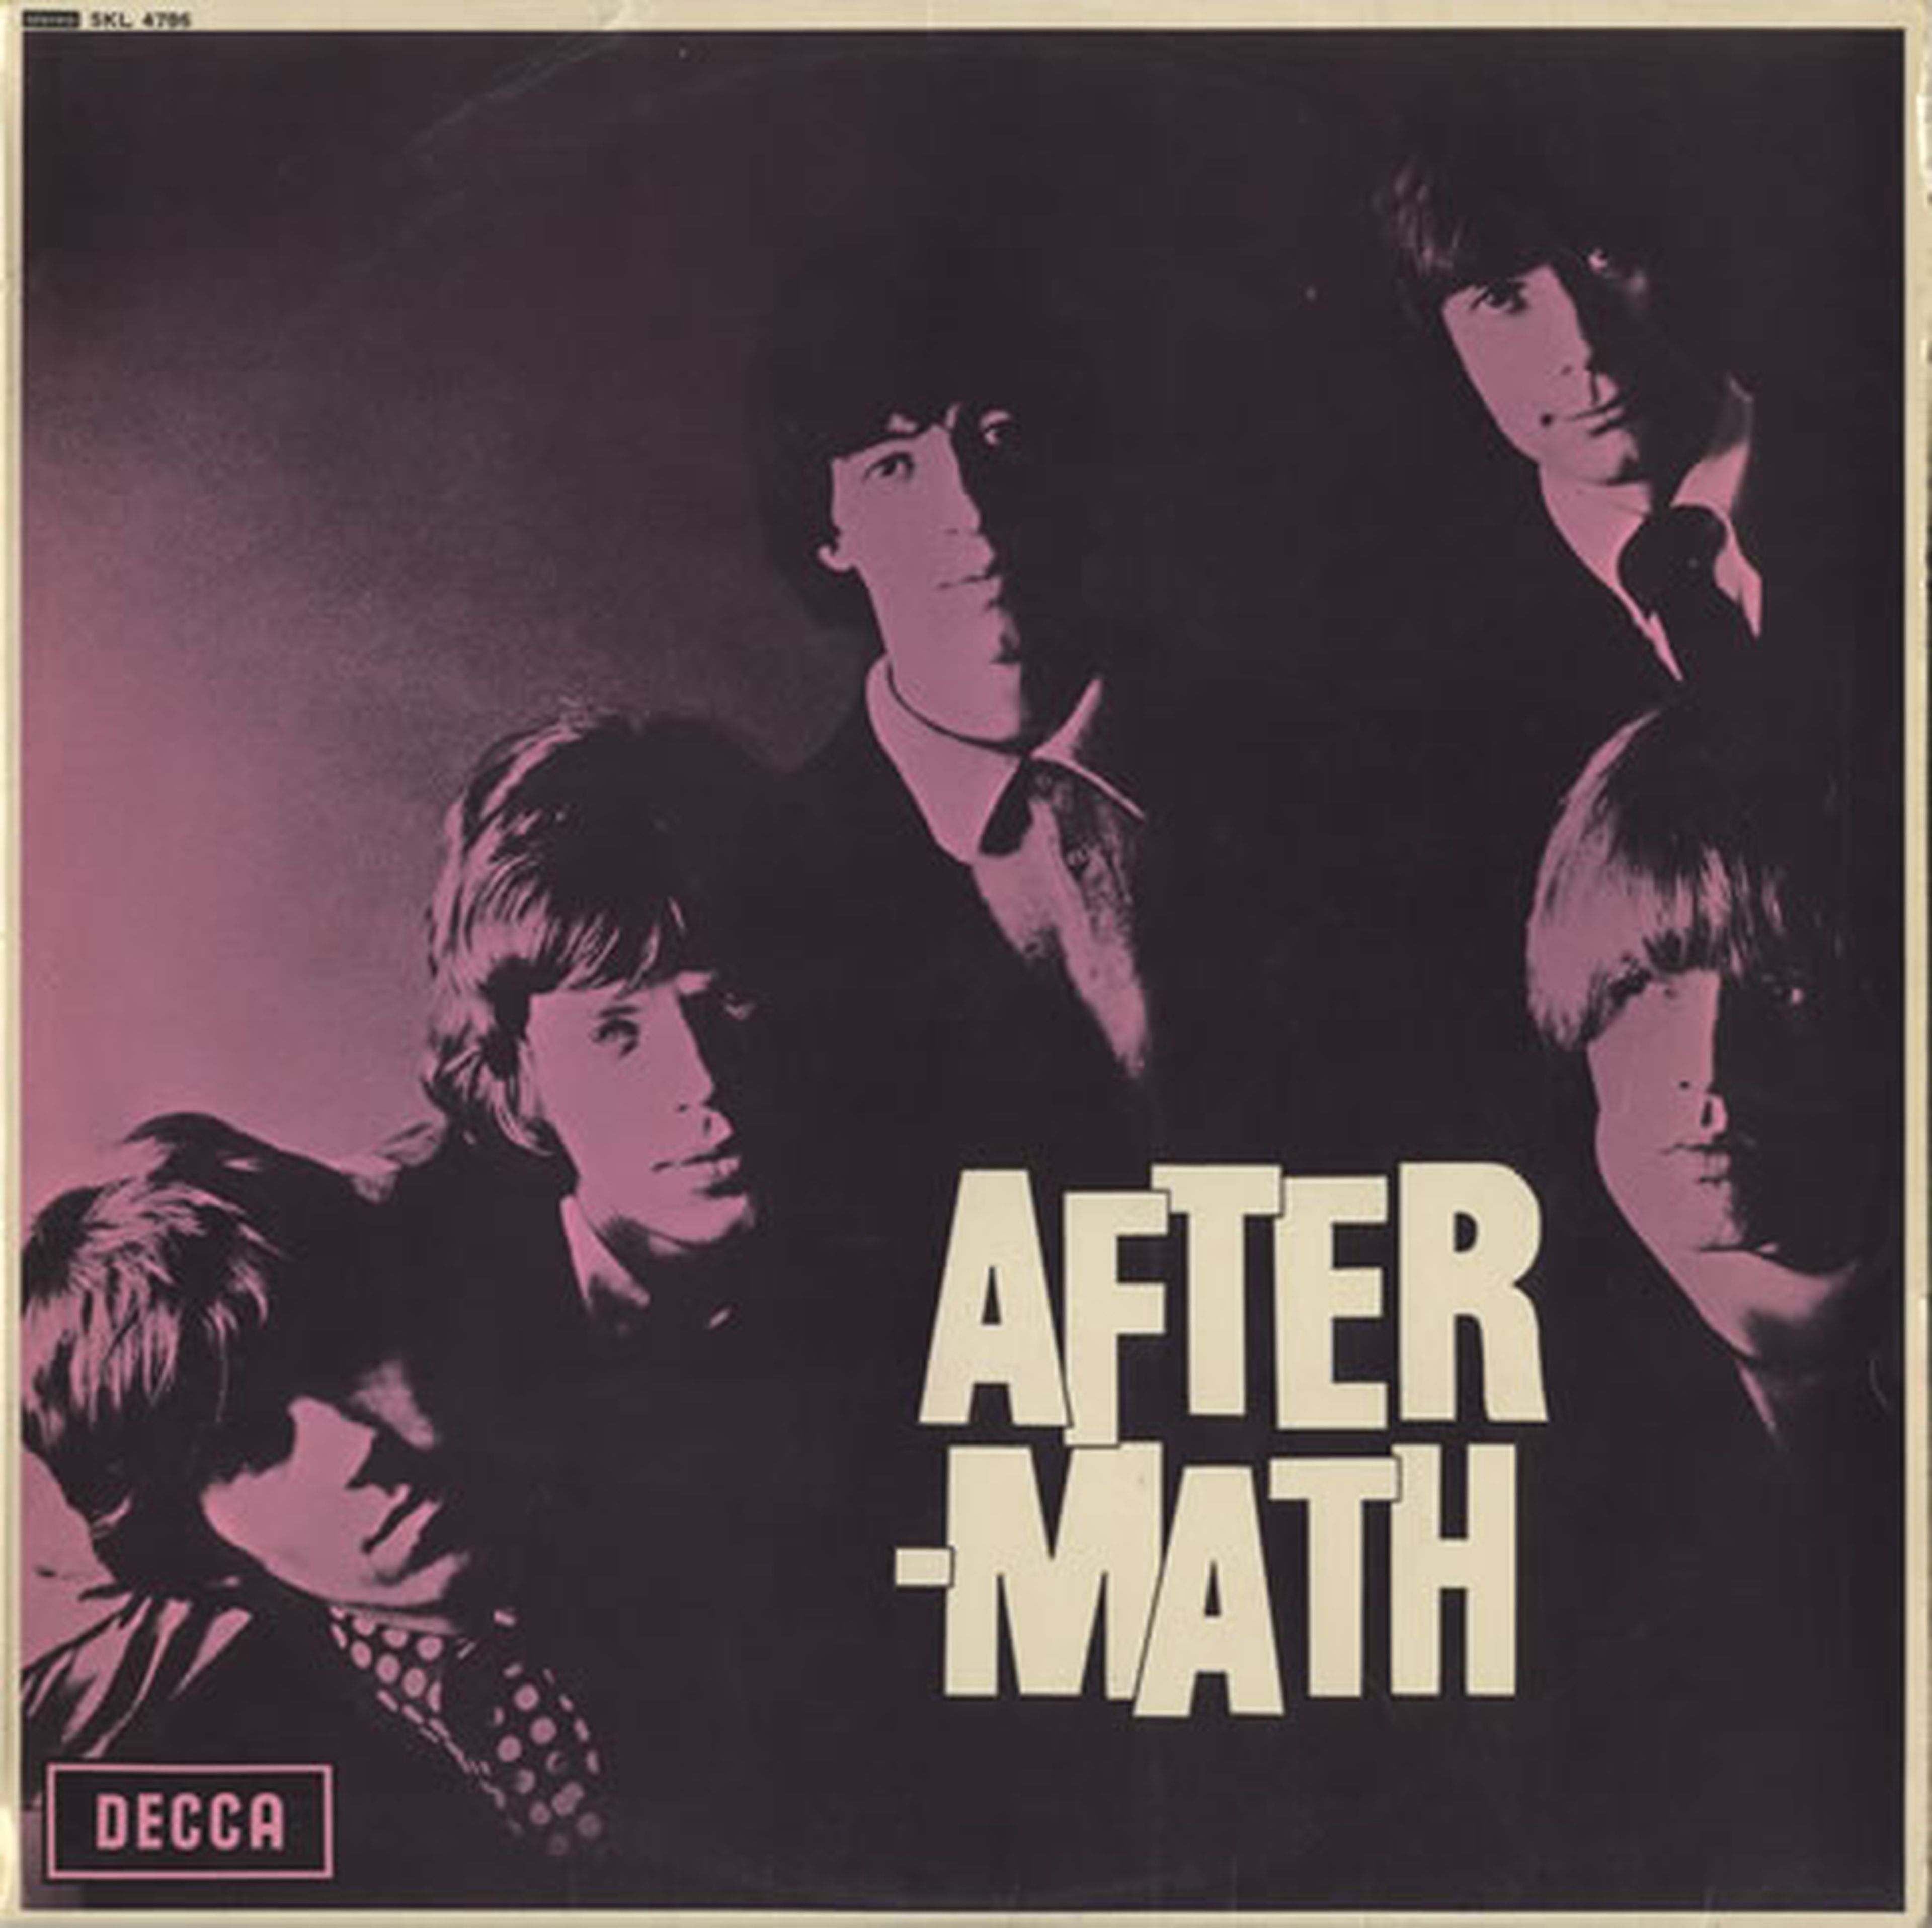 Portada de Aftermath, sexto disco de los Rolling Stones